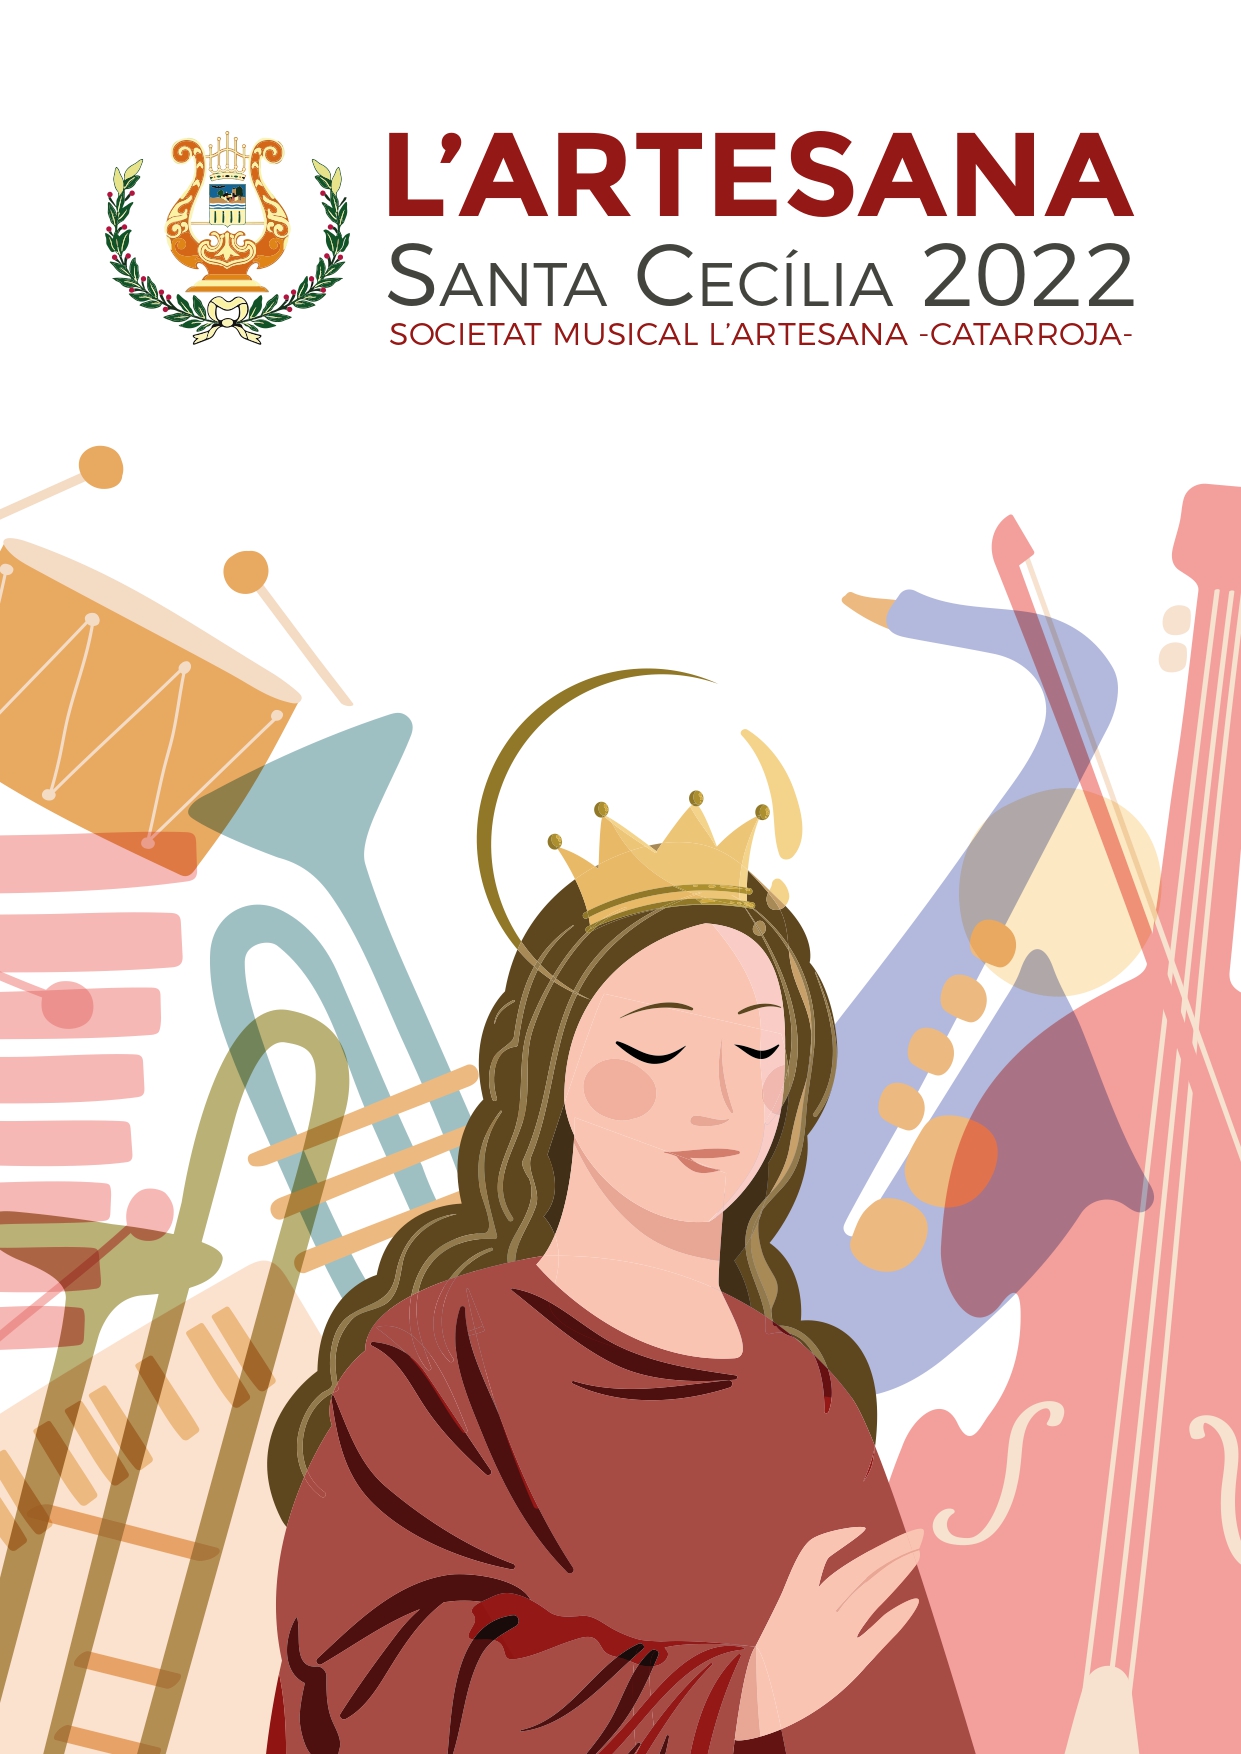 Festes Santa Cecilia 2022